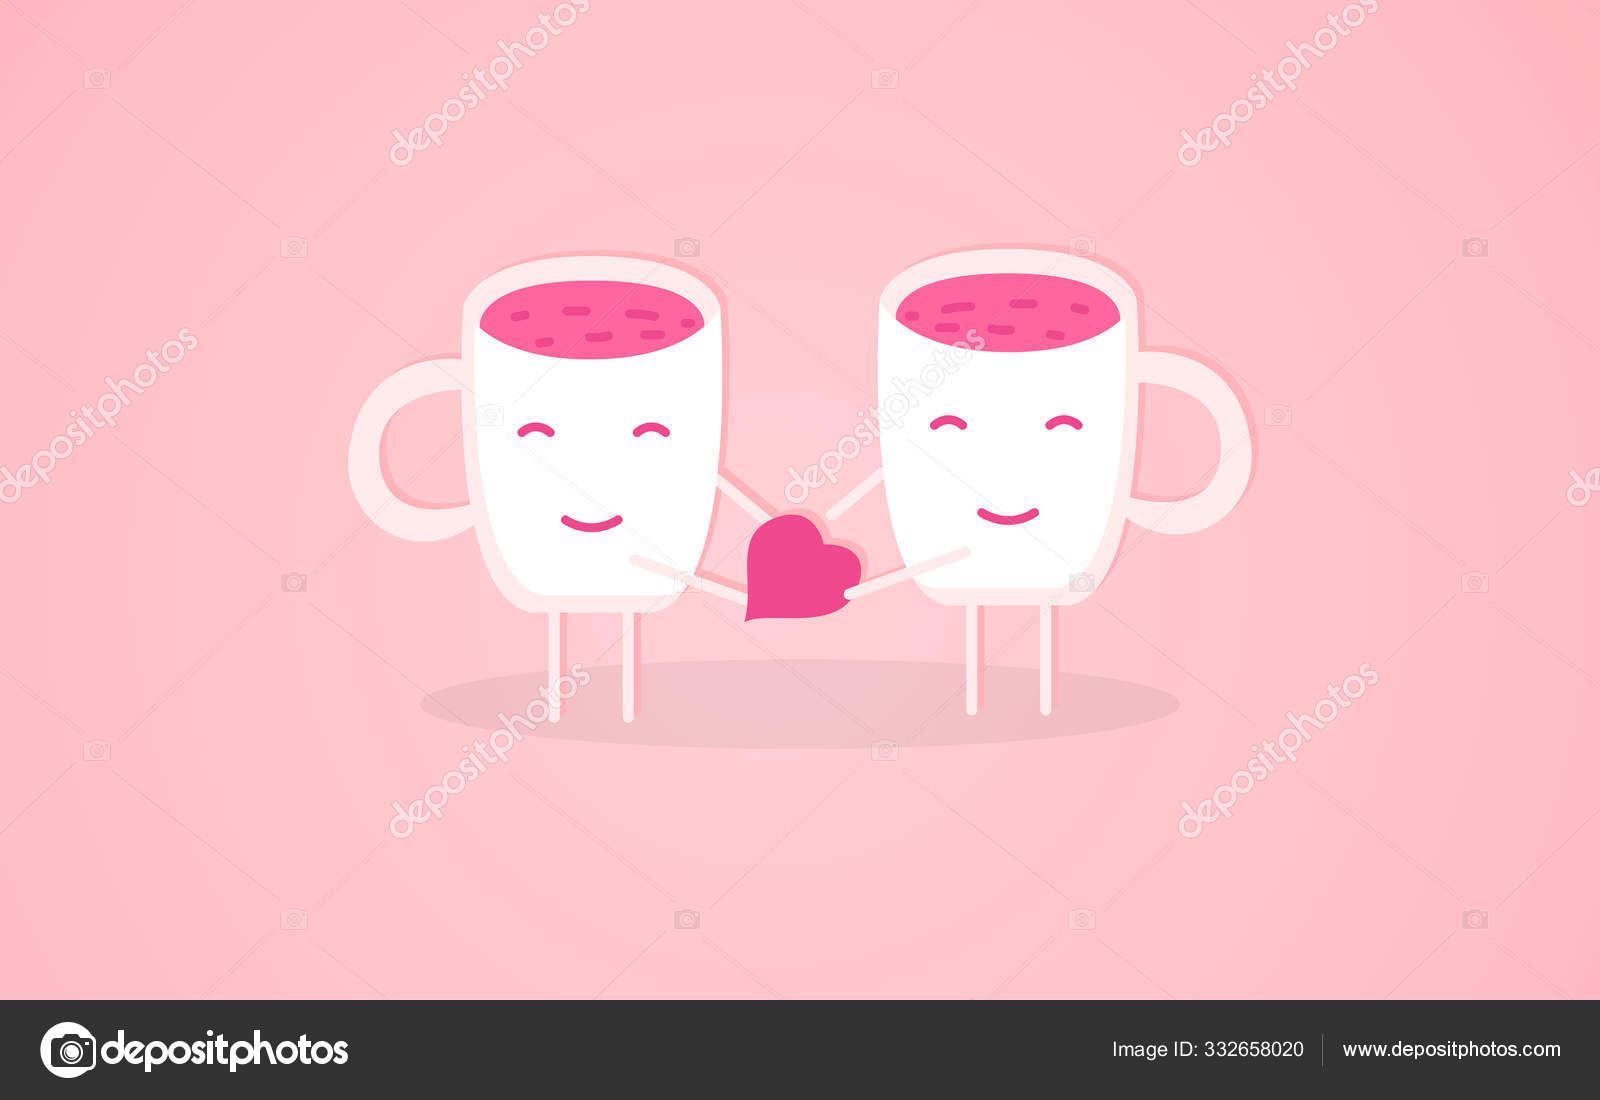 Doodle two cute hearts cartoon Coffee Mug by Hana